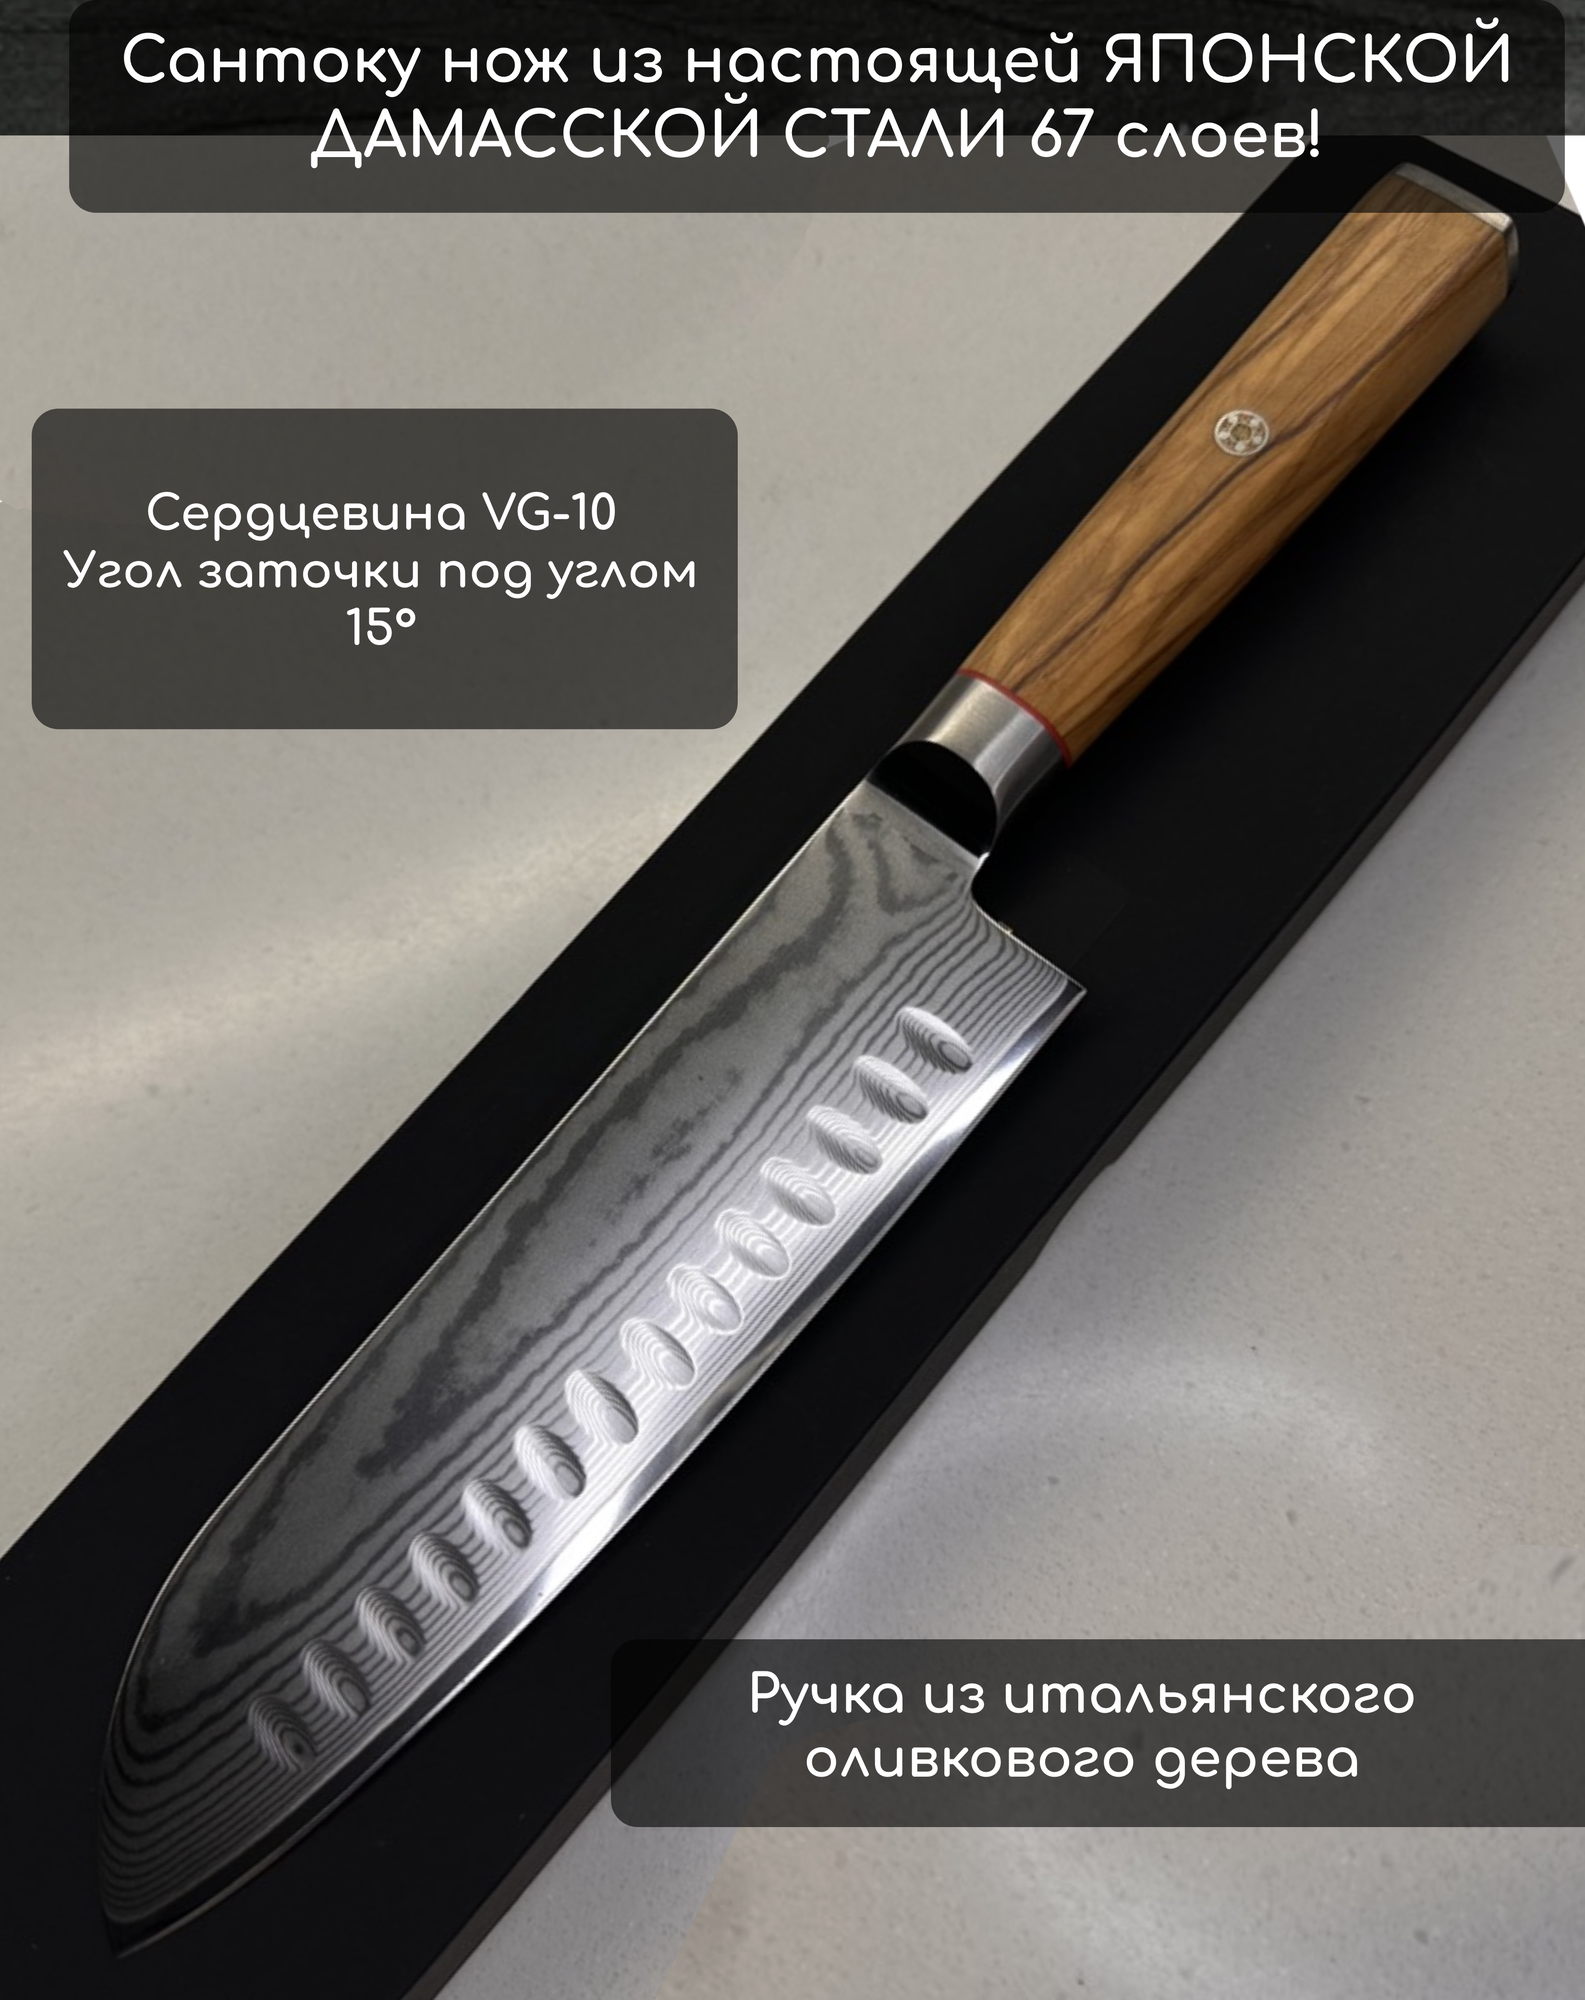 Сантоку нож UBF-Corp из дамасской стали 67 слоев с шестиугольной ручкой из оливкового дерева